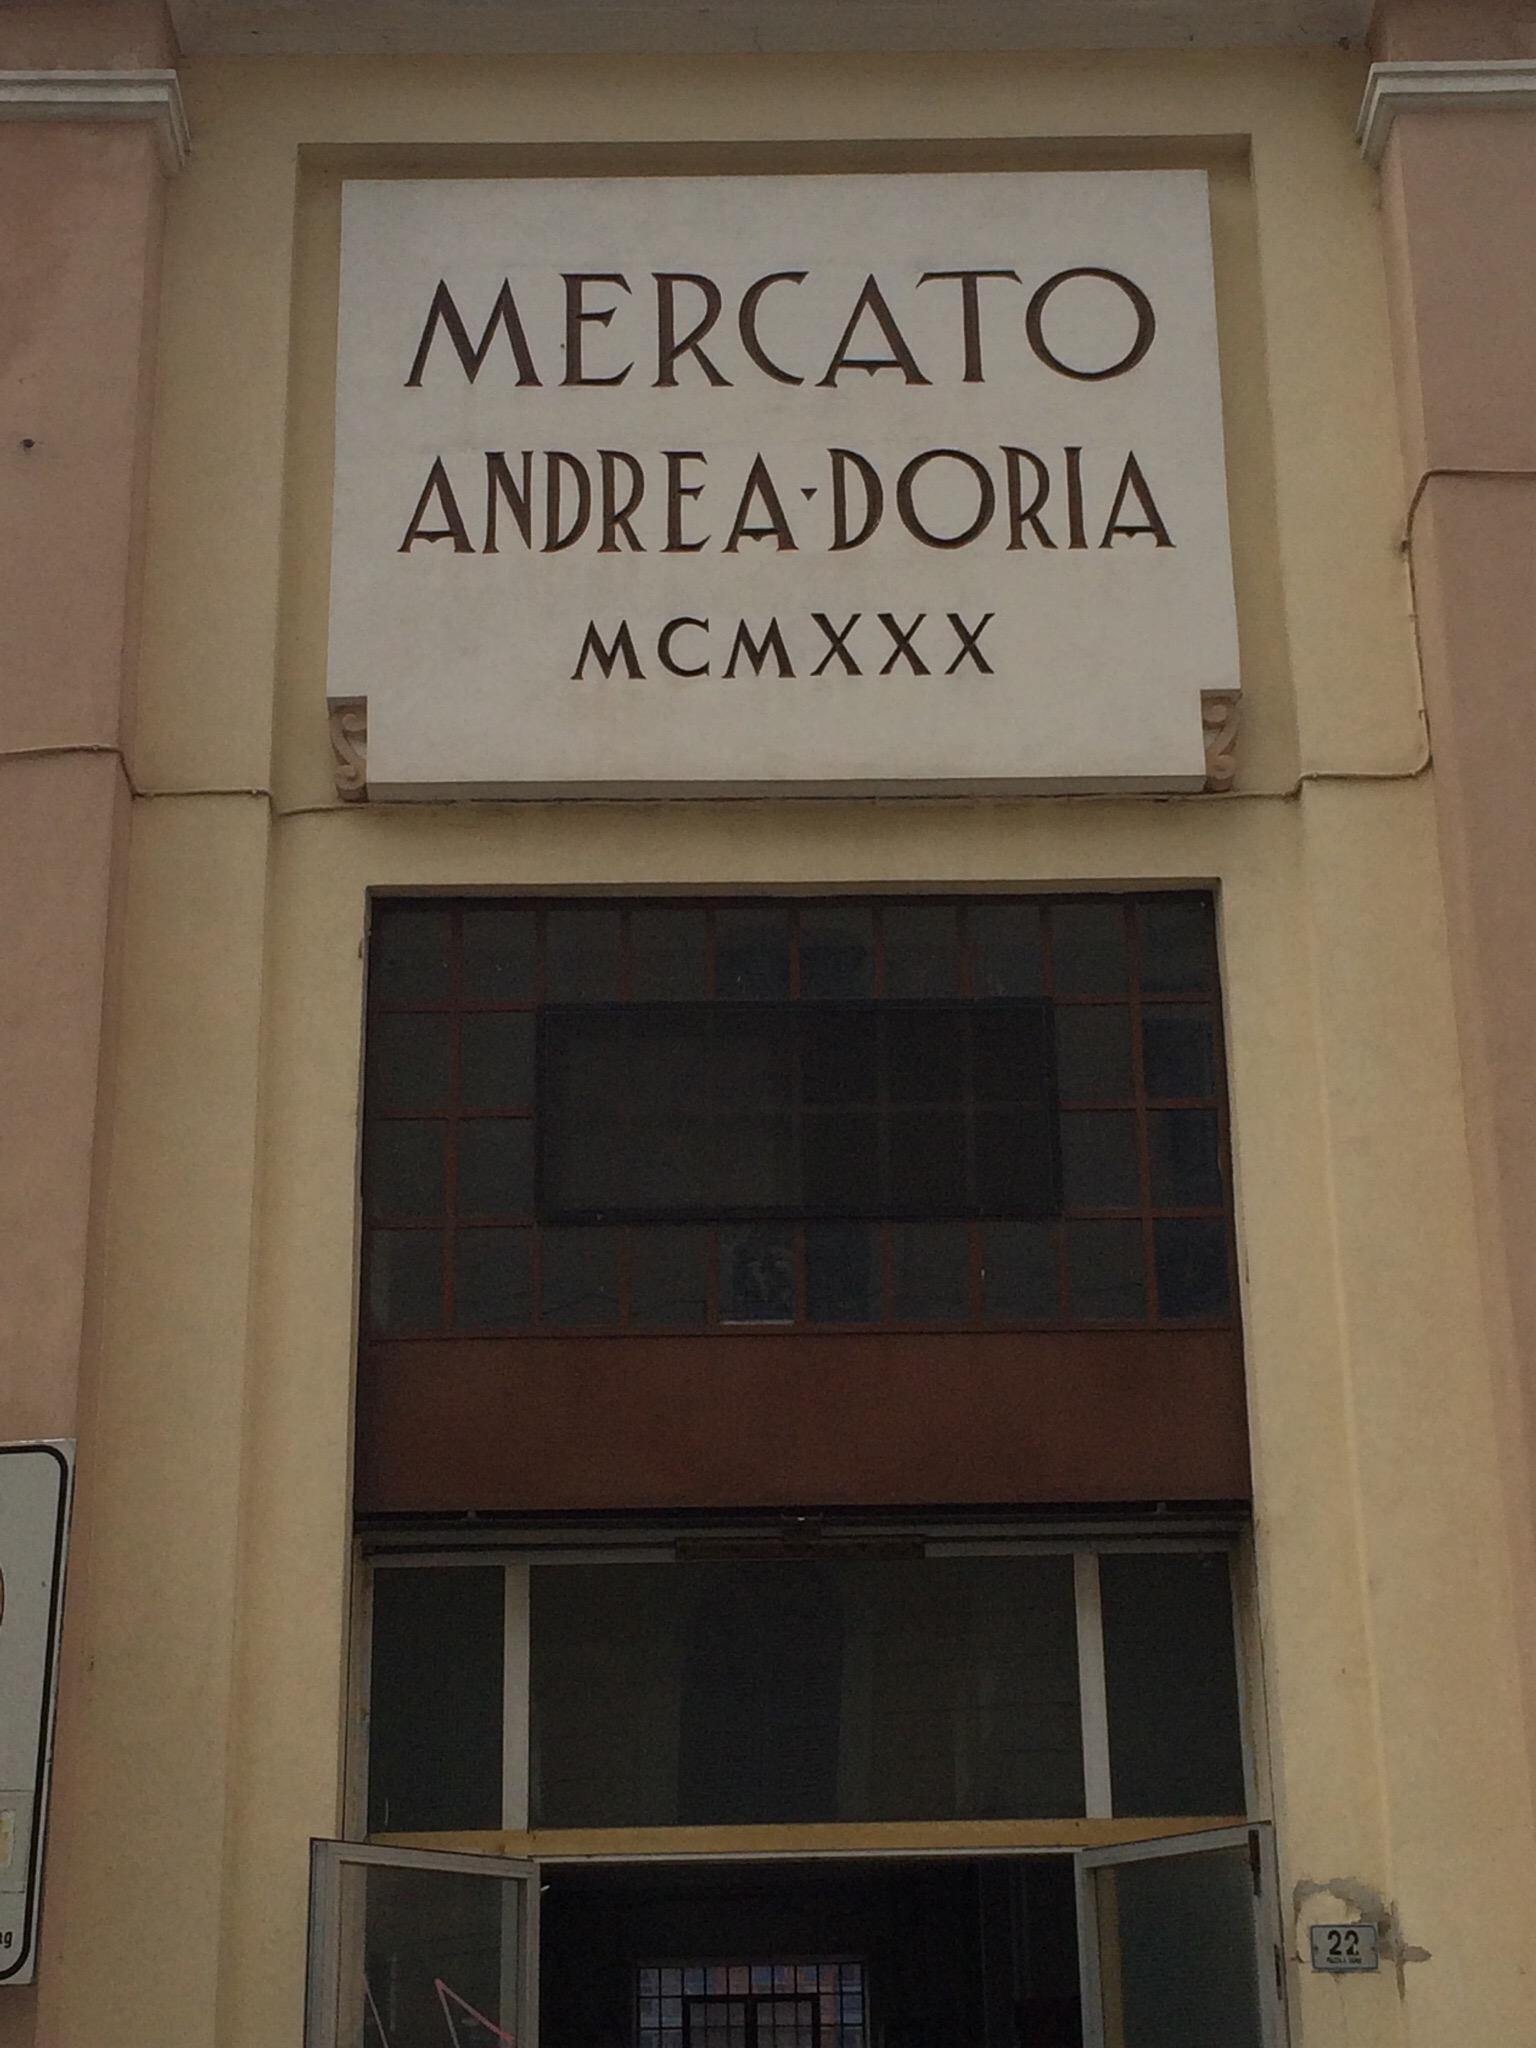 Mercato Andrea Doria